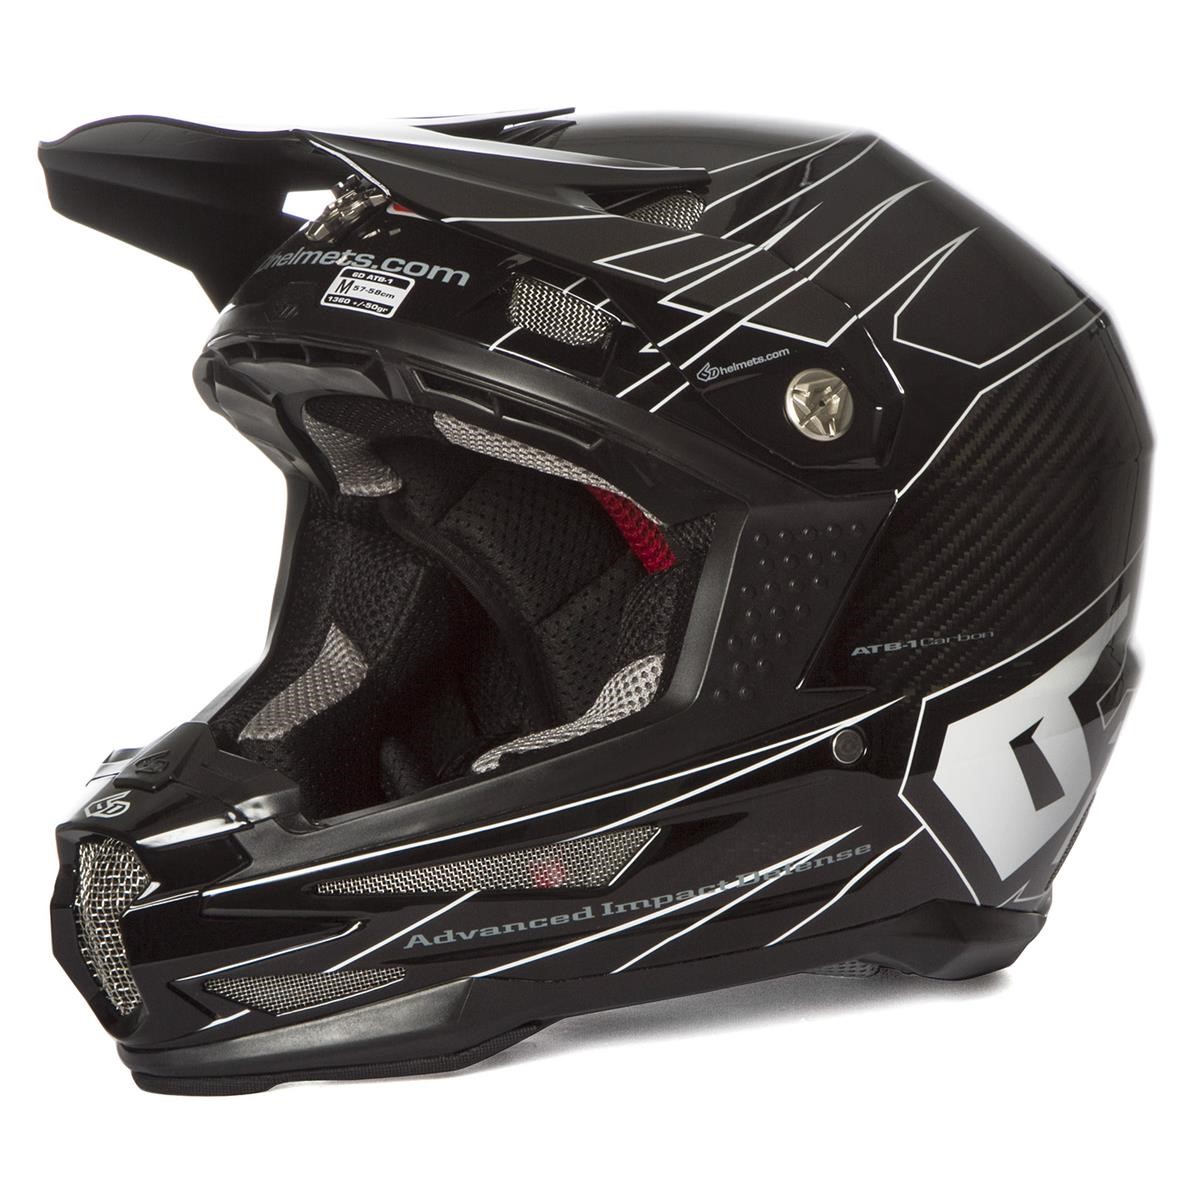 6D Downhill MTB Helmet ATB-1 Carbon Attack - Black